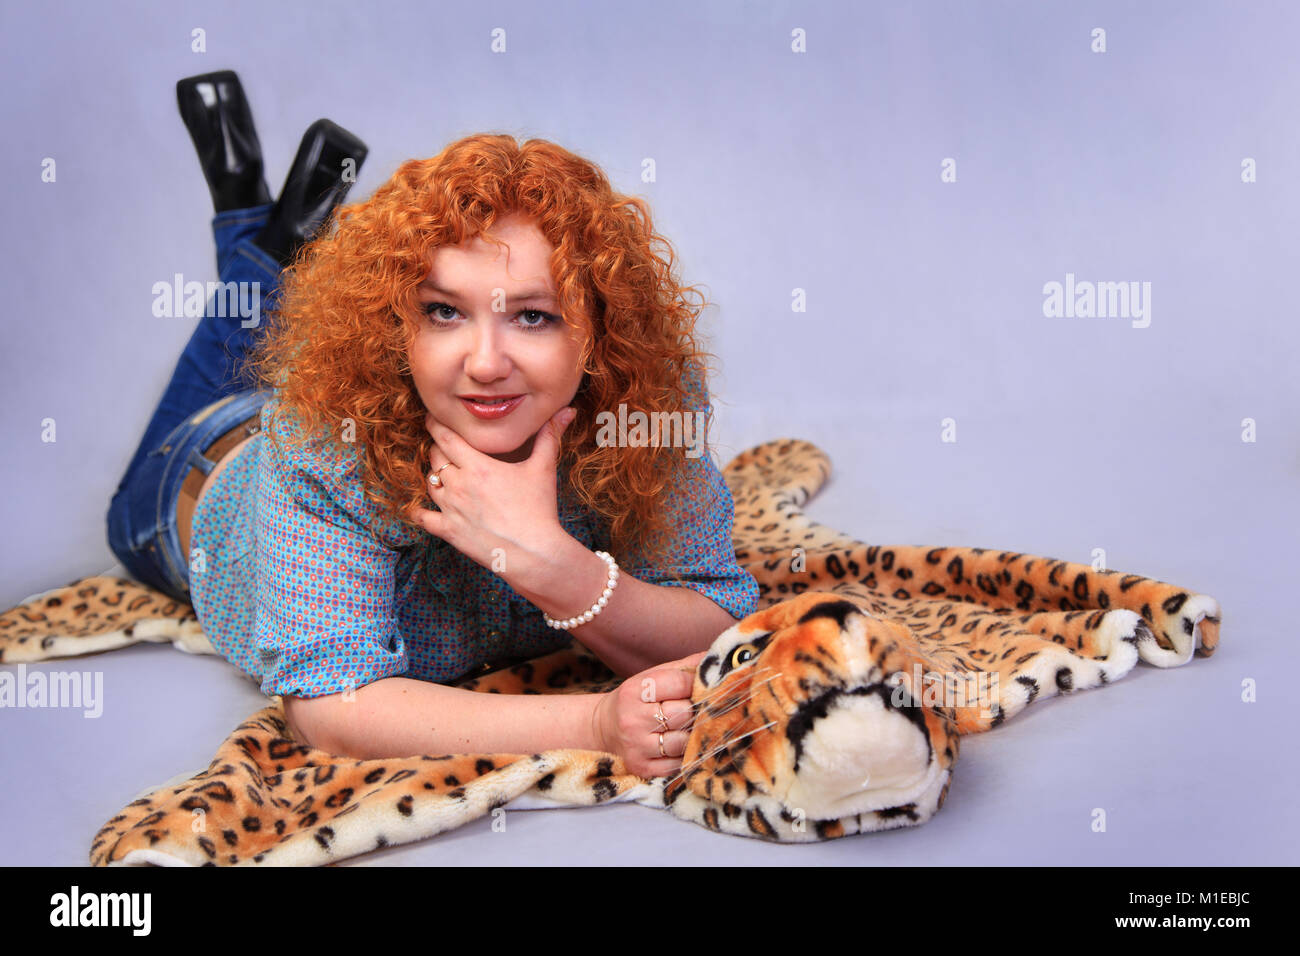 Portrait de la belle rousse se trouvant dans le studio sur la peau de léopard Banque D'Images